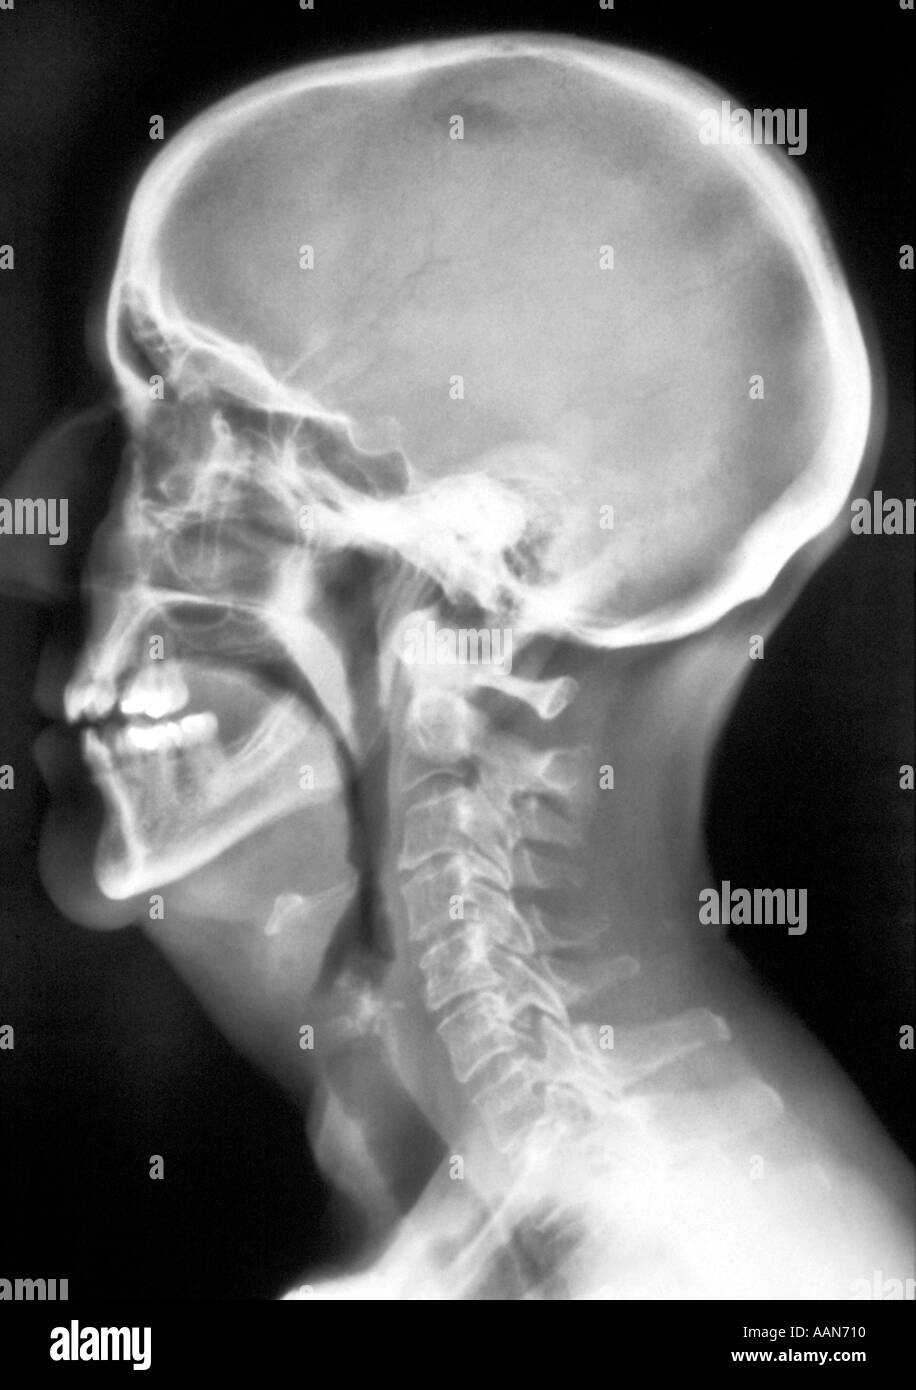 X Ray of Human Skull Stock Photo